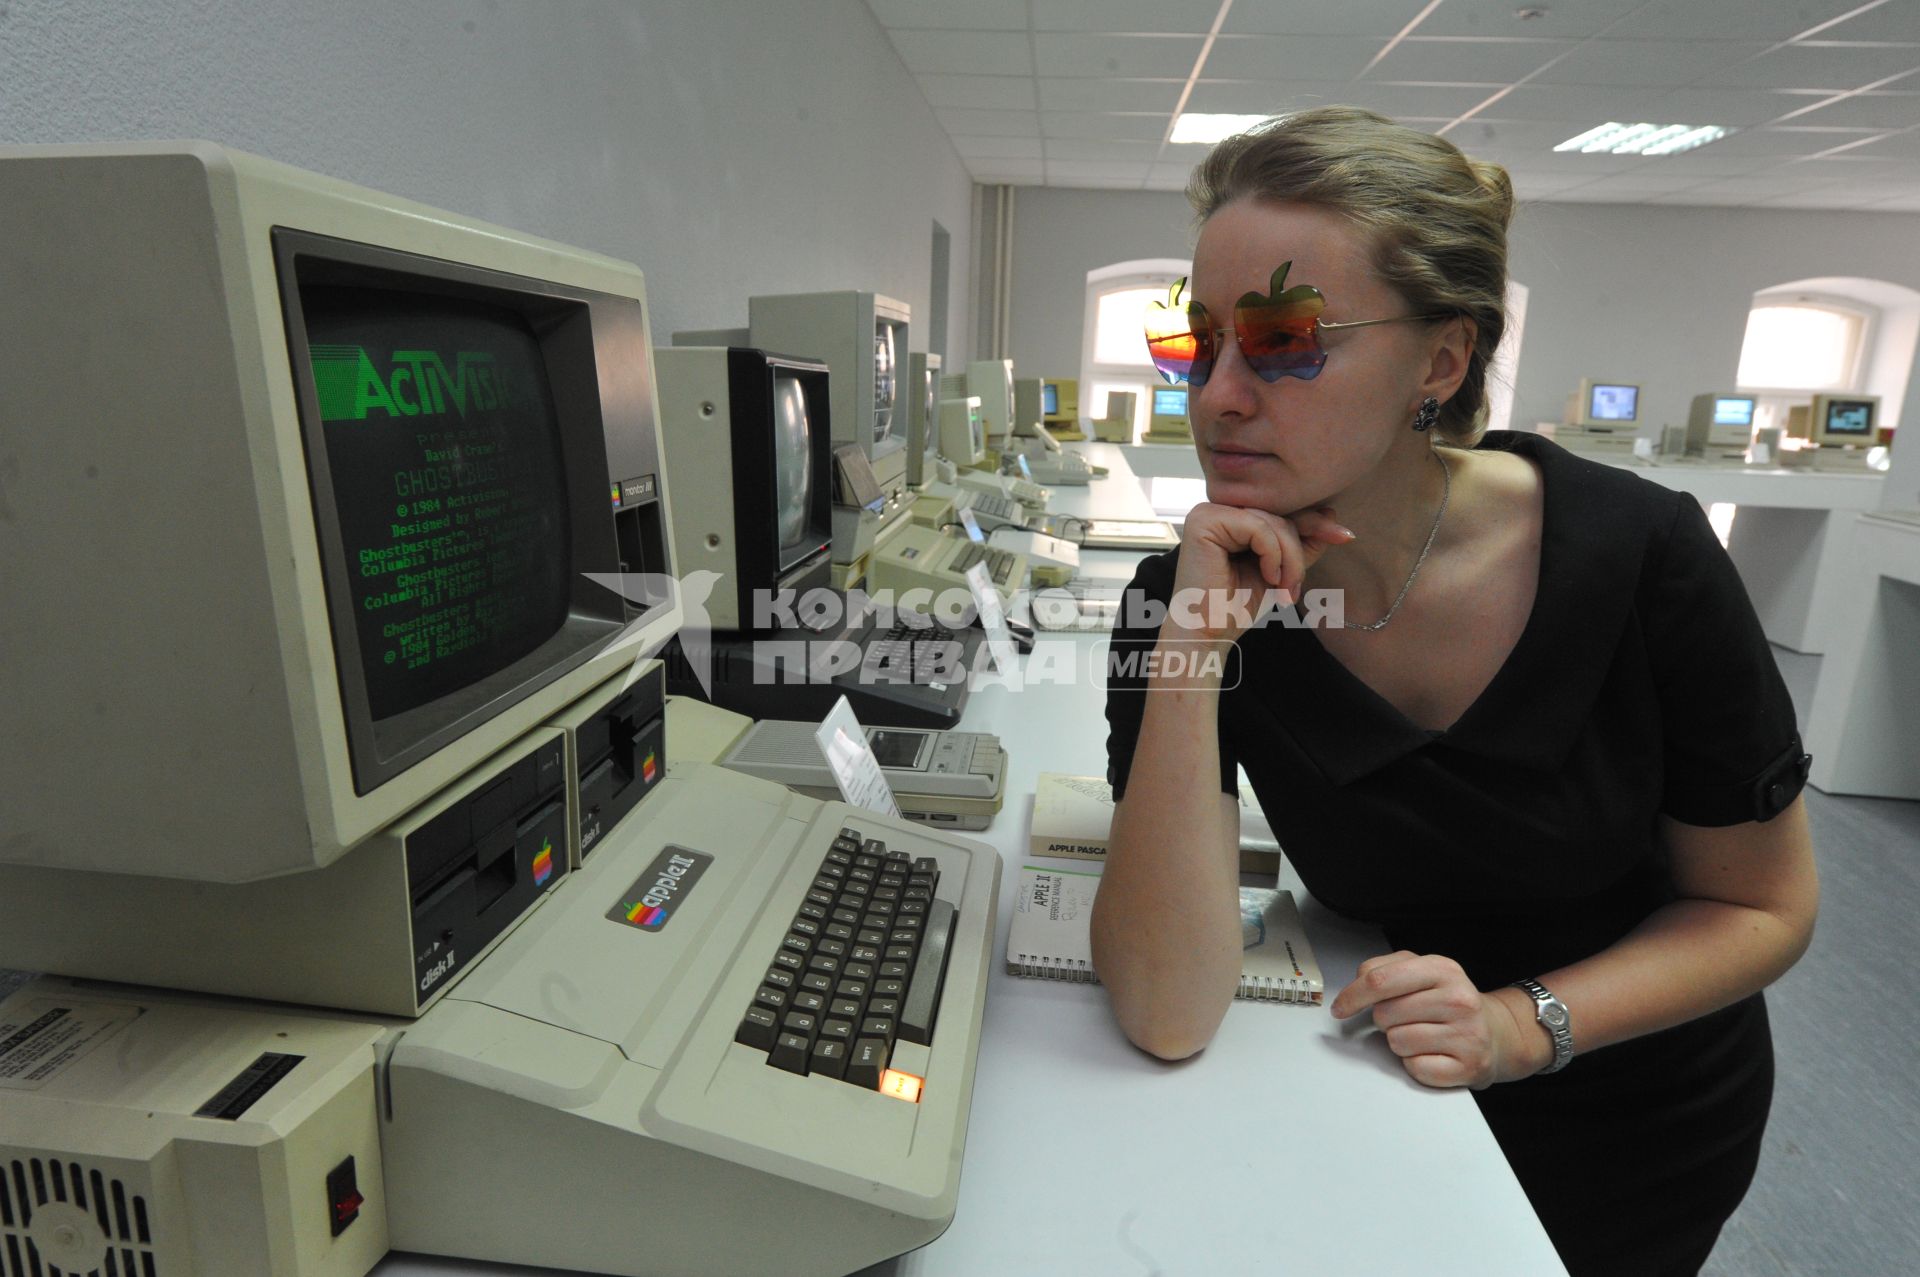 В Москве открылся музей Apple. На снимке: девушка в раритетных очках Apple рядом с компьютером Apple II.